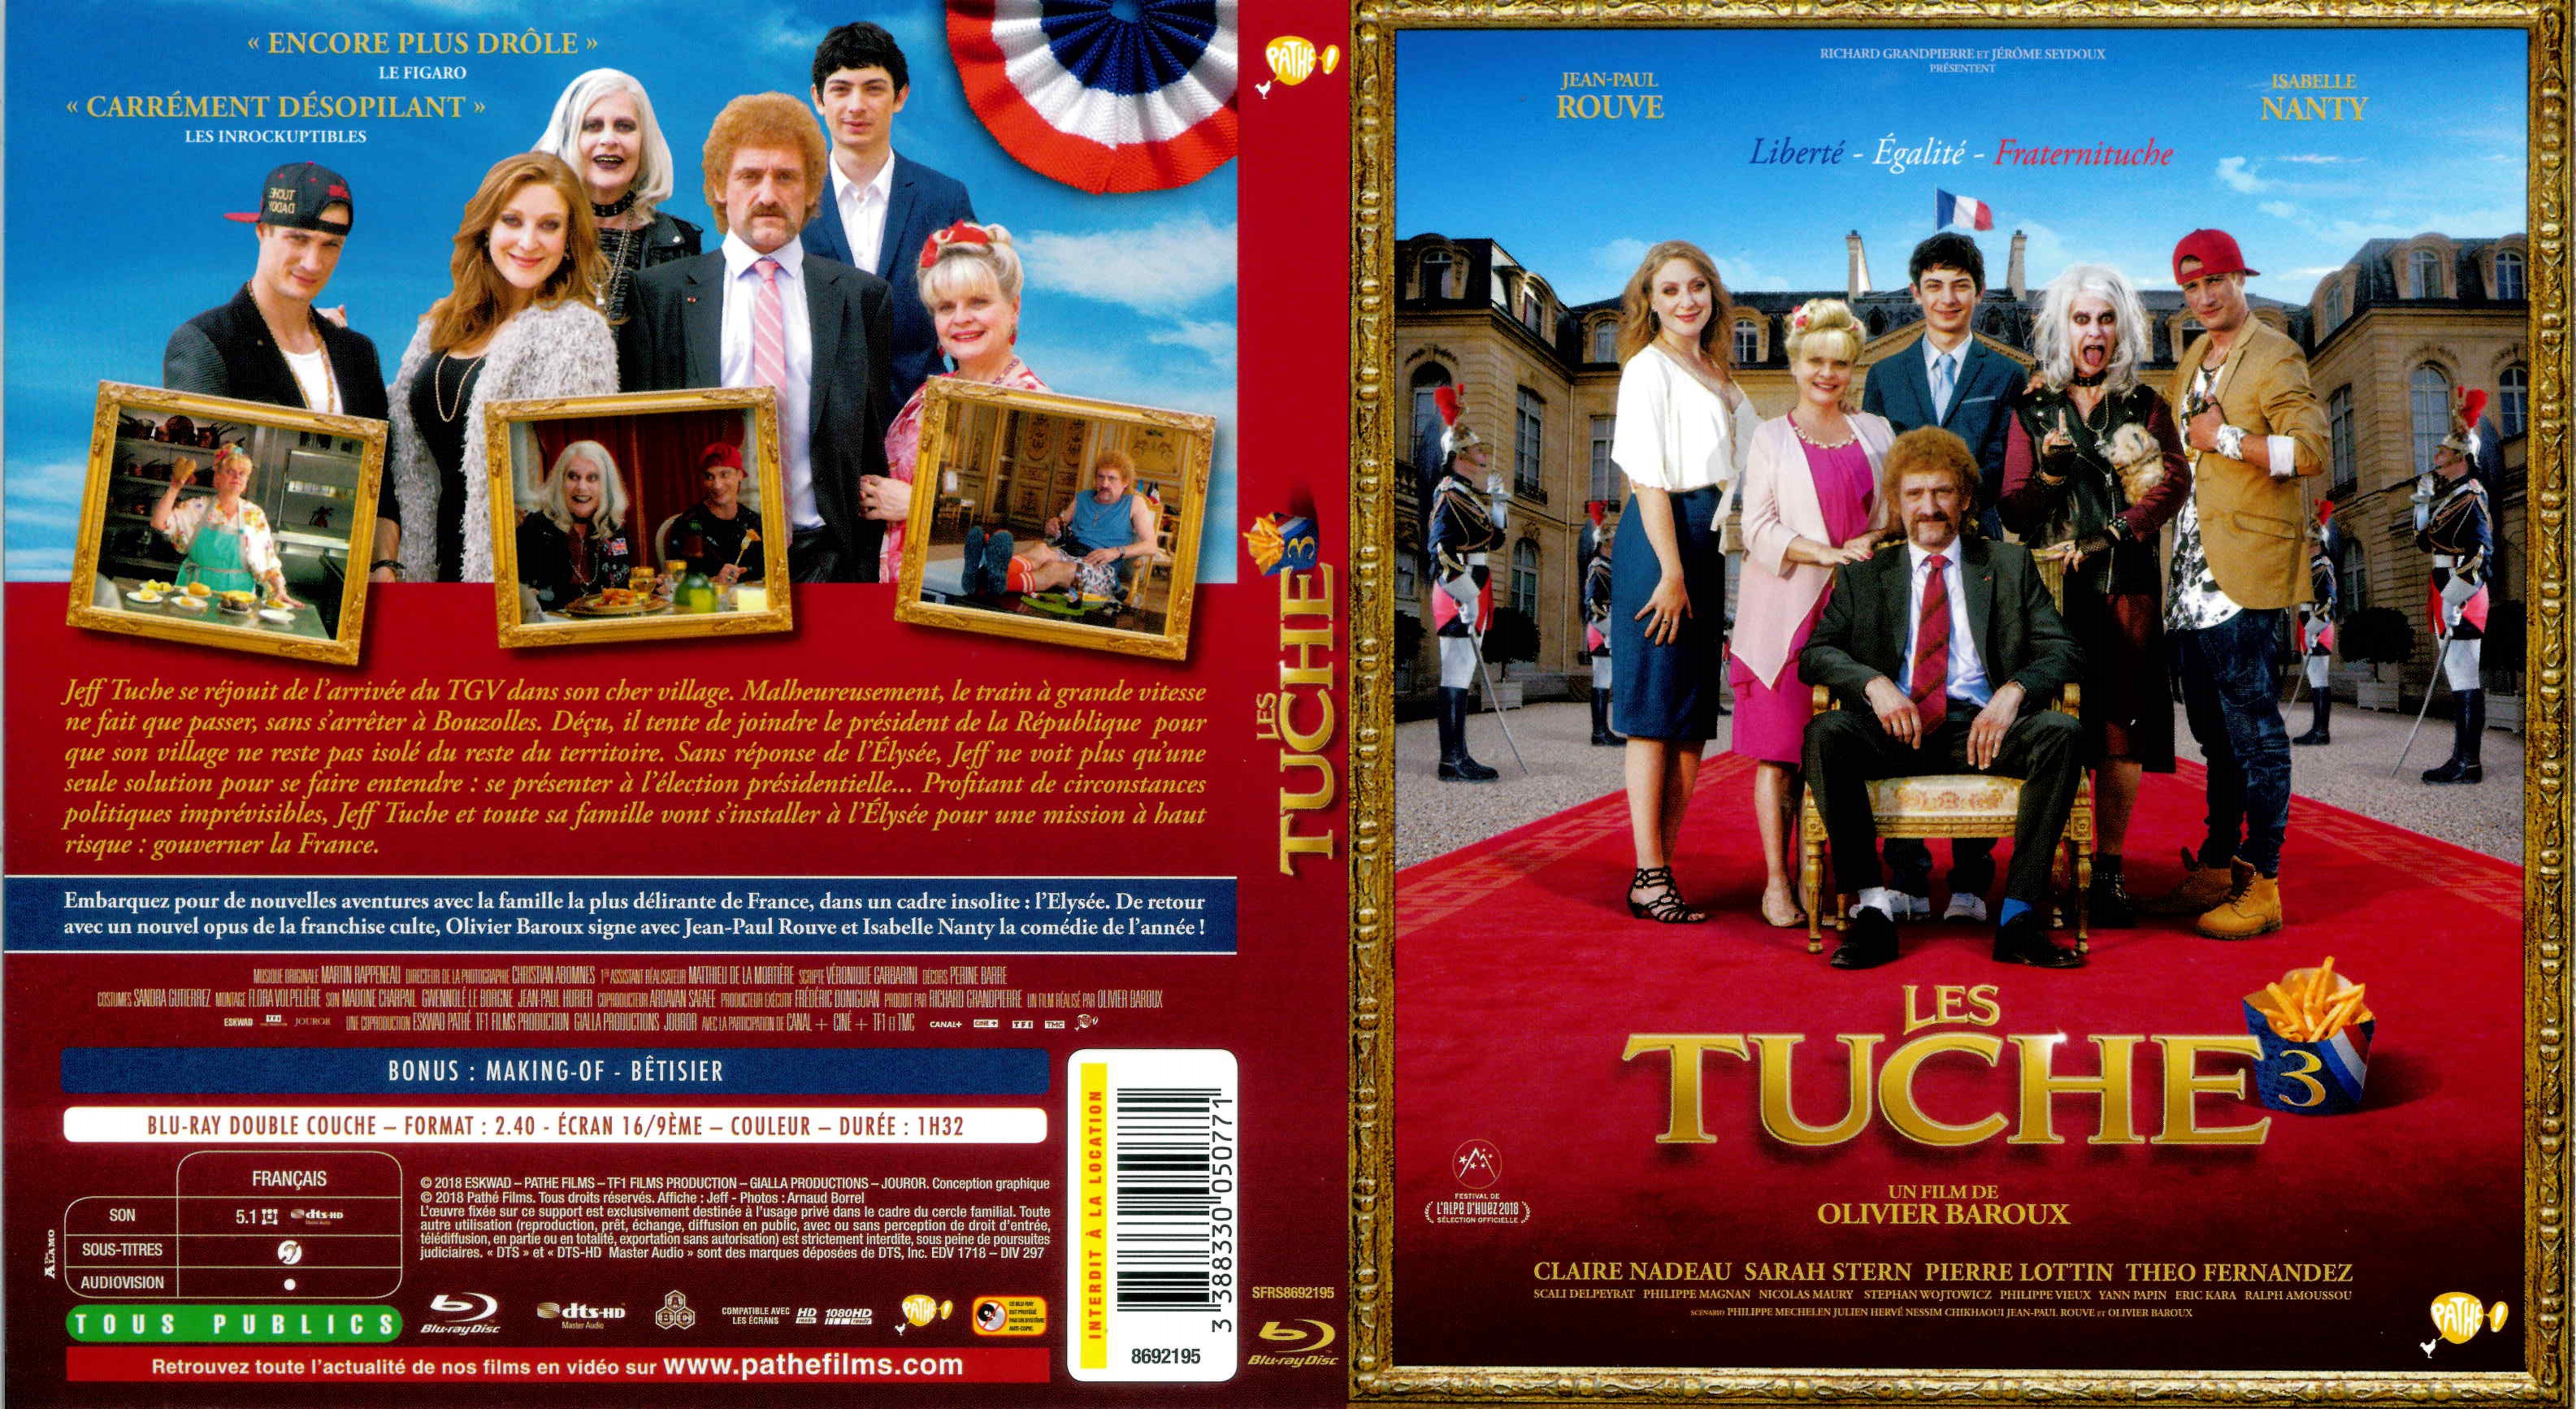 Jaquette DVD Les Tuche 3 (BLU-RAY)